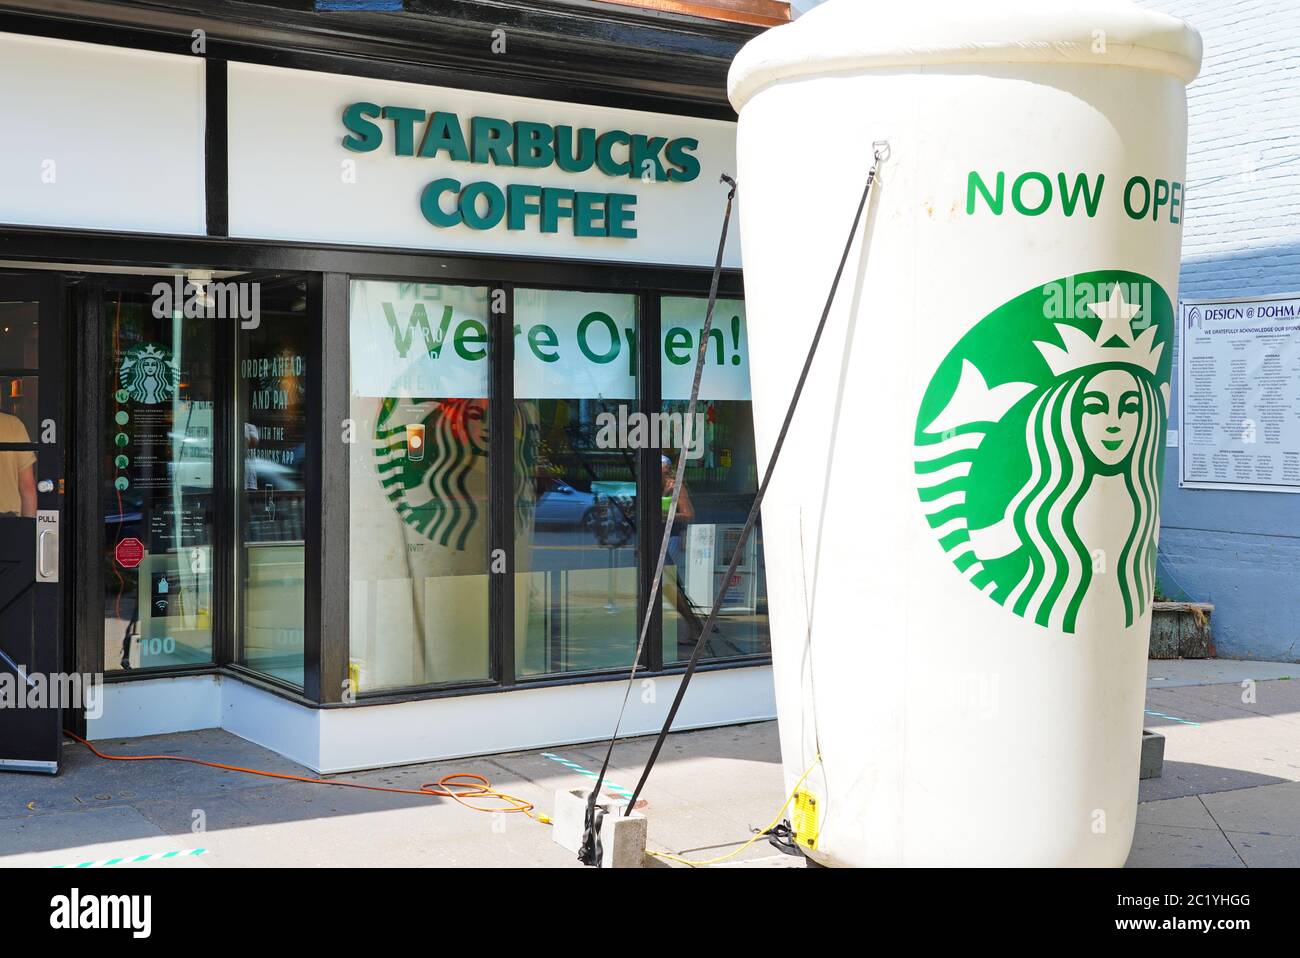 PRINCETON, New Jersey – 12. JUNI 2020 – Blick auf eine riesige Tasse Starbucks Coffee, die die Wiedereröffnung des Starbucks Stores in der Nassau Street in Princet signalisiert Stockfoto